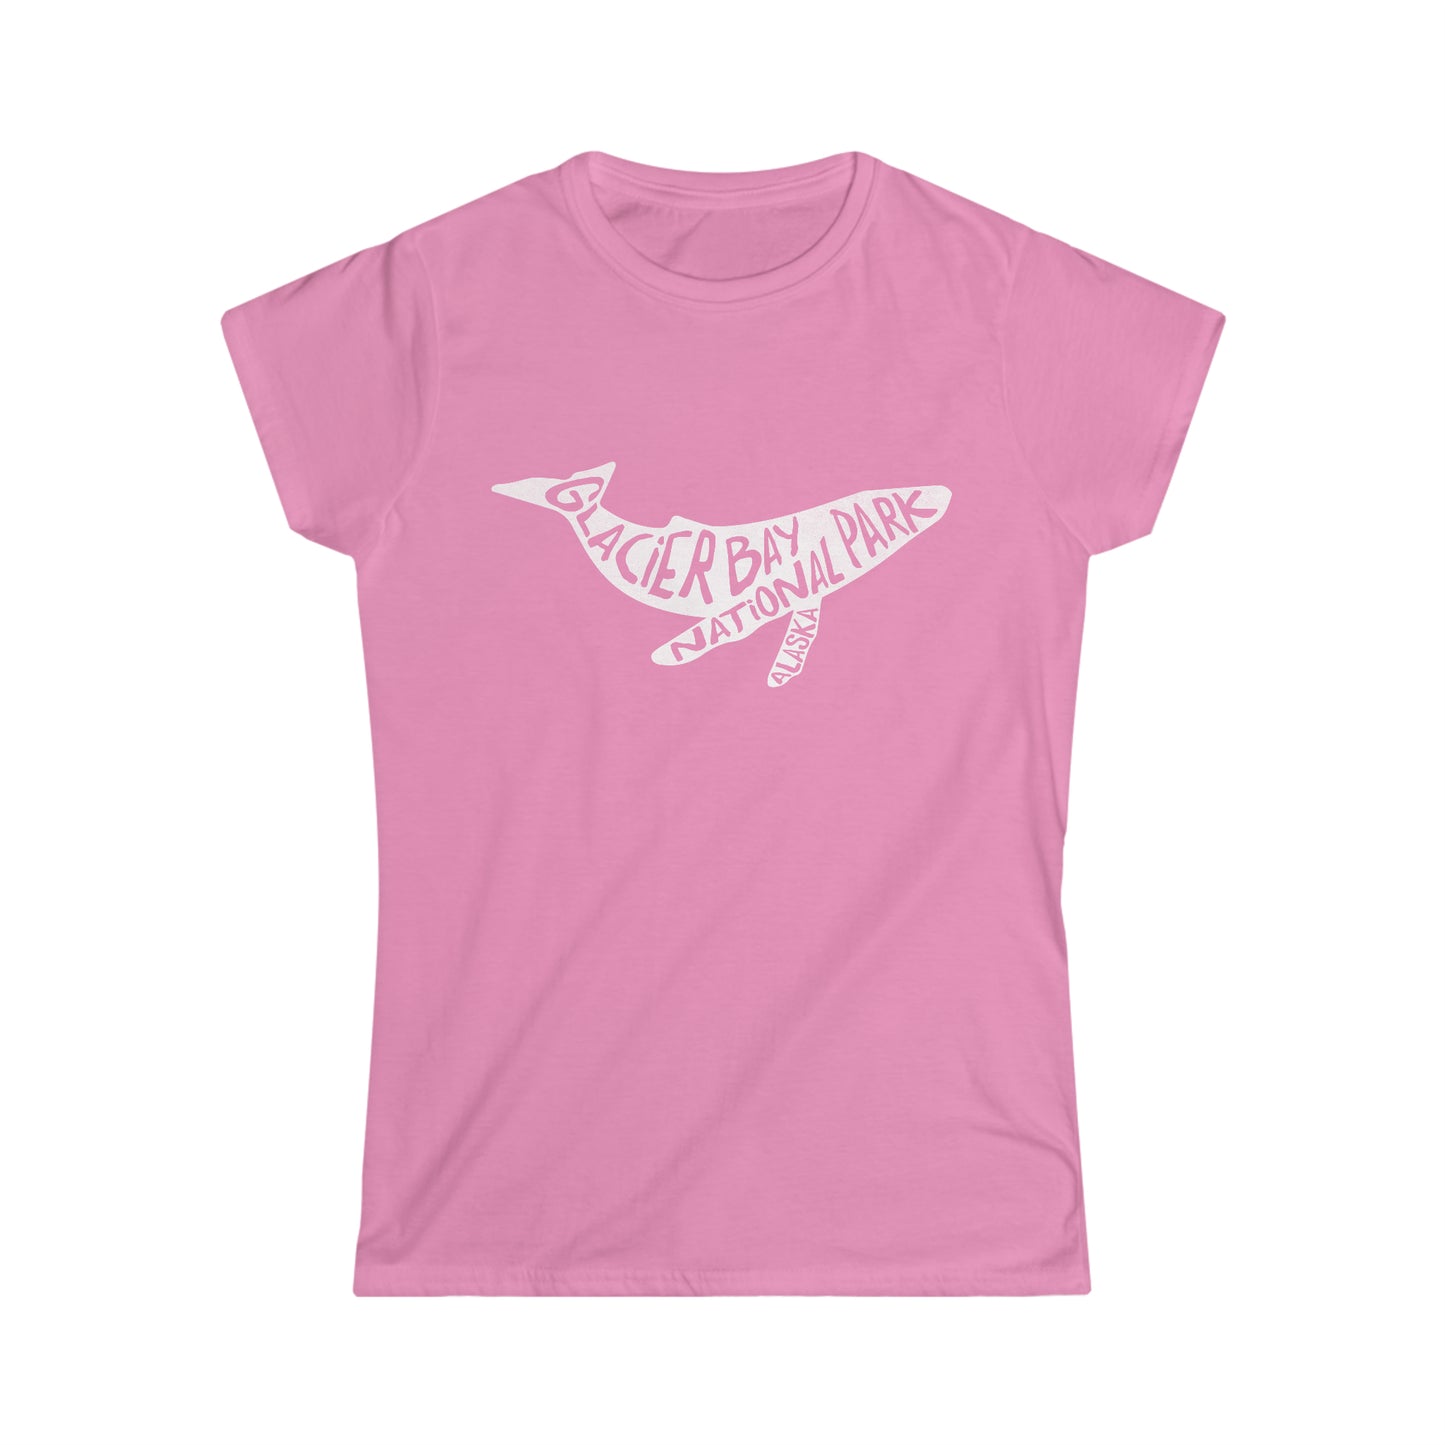 Glacier Bay National Park Women's T-Shirt - Humpback Whale